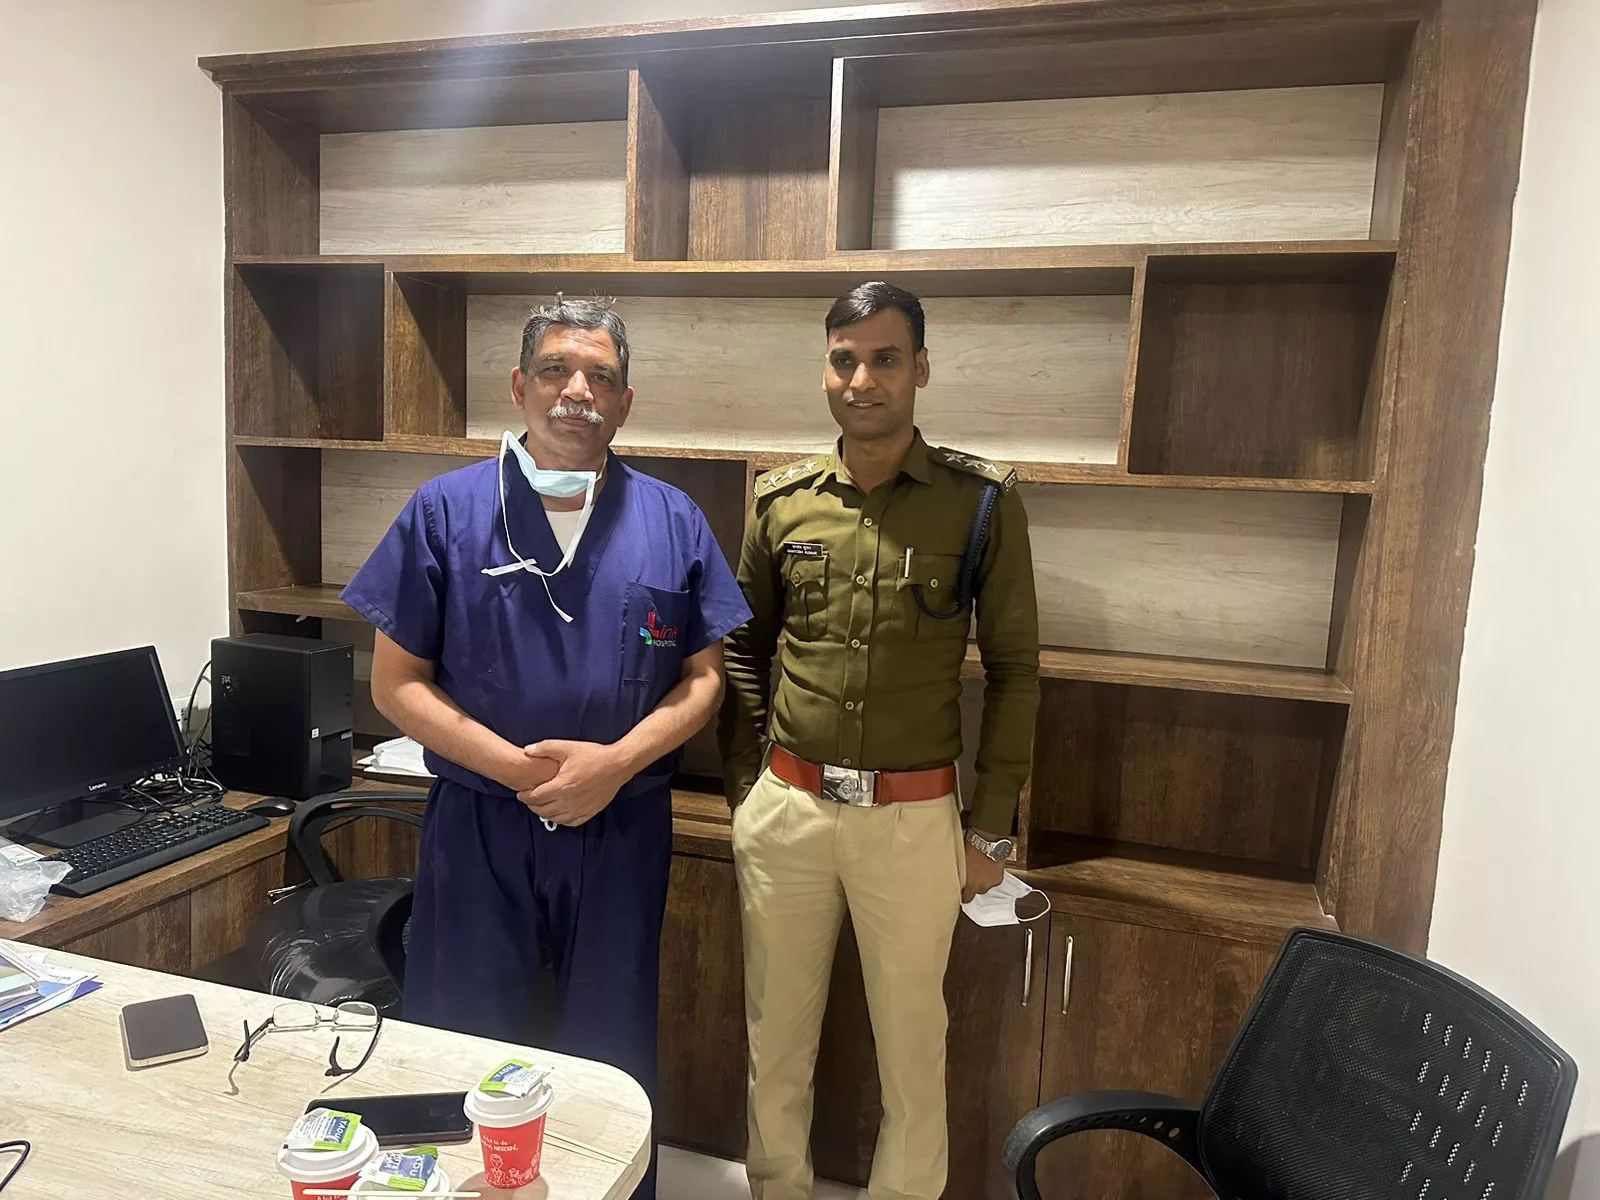 पुलिस के डंडे से नहीं साइकोलॉजिकल फ़ंडे से अस्थिरोग विशेषज्ञ डॉ समीर गुप्ता का विदेशी मुद्रा, पासपोर्ट व नगदी से भरा बैग मिला वापस | New India Times